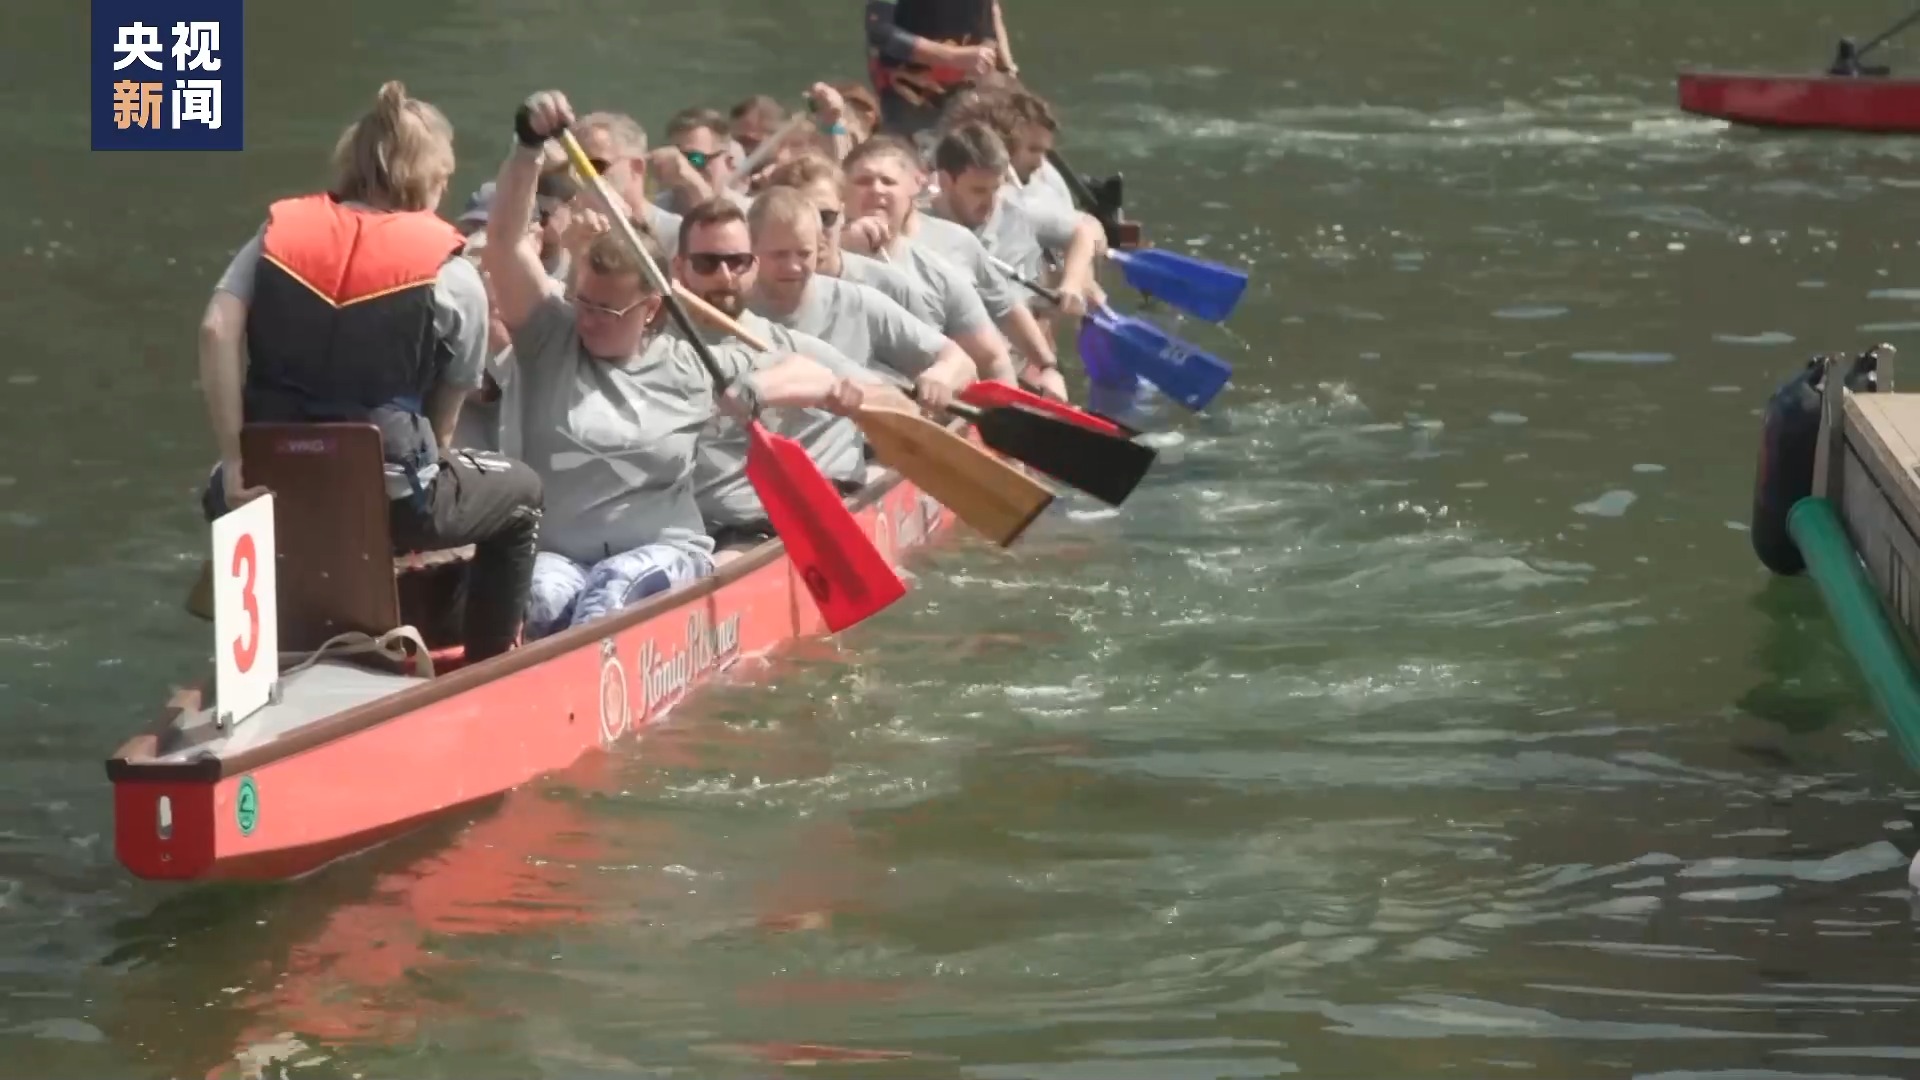 飞桨逐浪 德国民众体验赛龙舟感受中国文化魅力